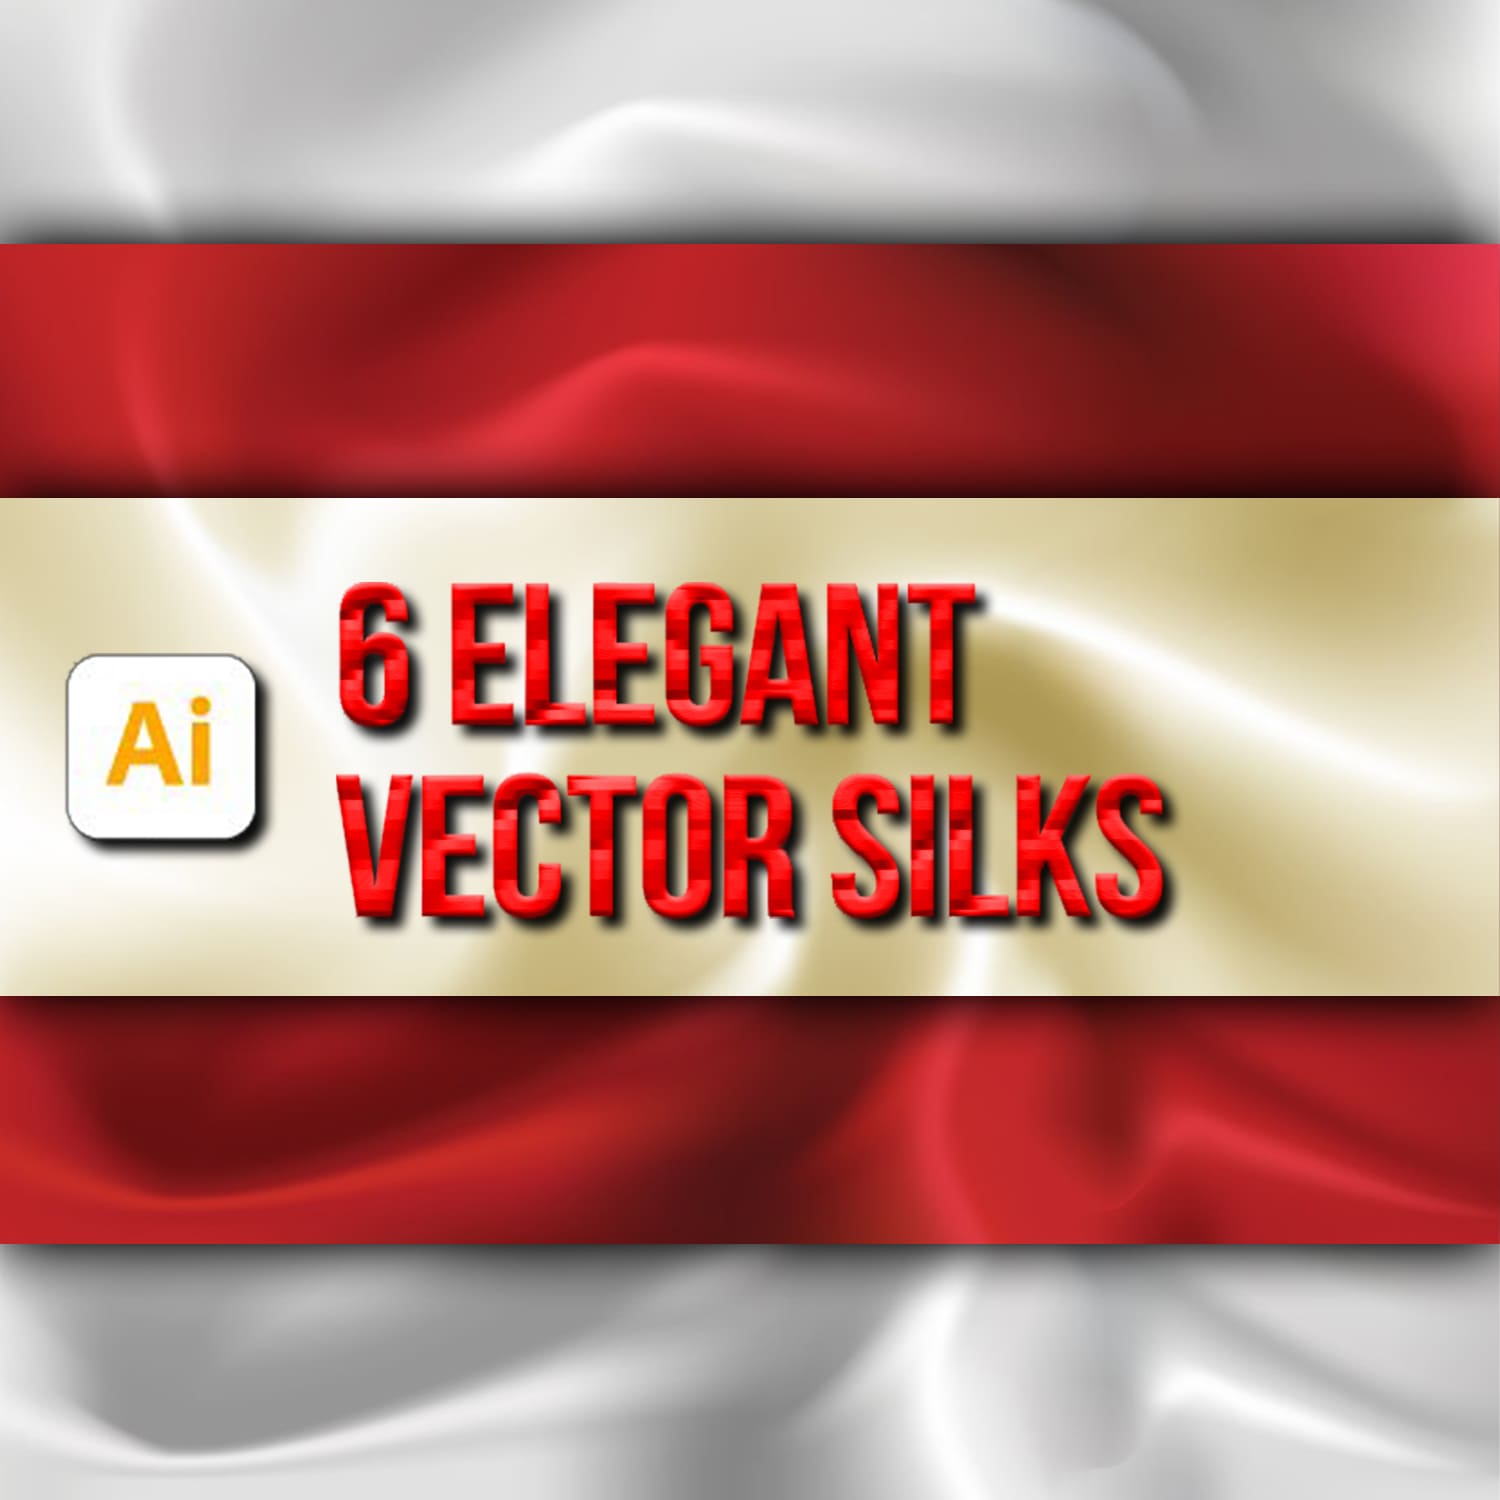 6 Elegant Vector Silks created by Loudoun Design Co.